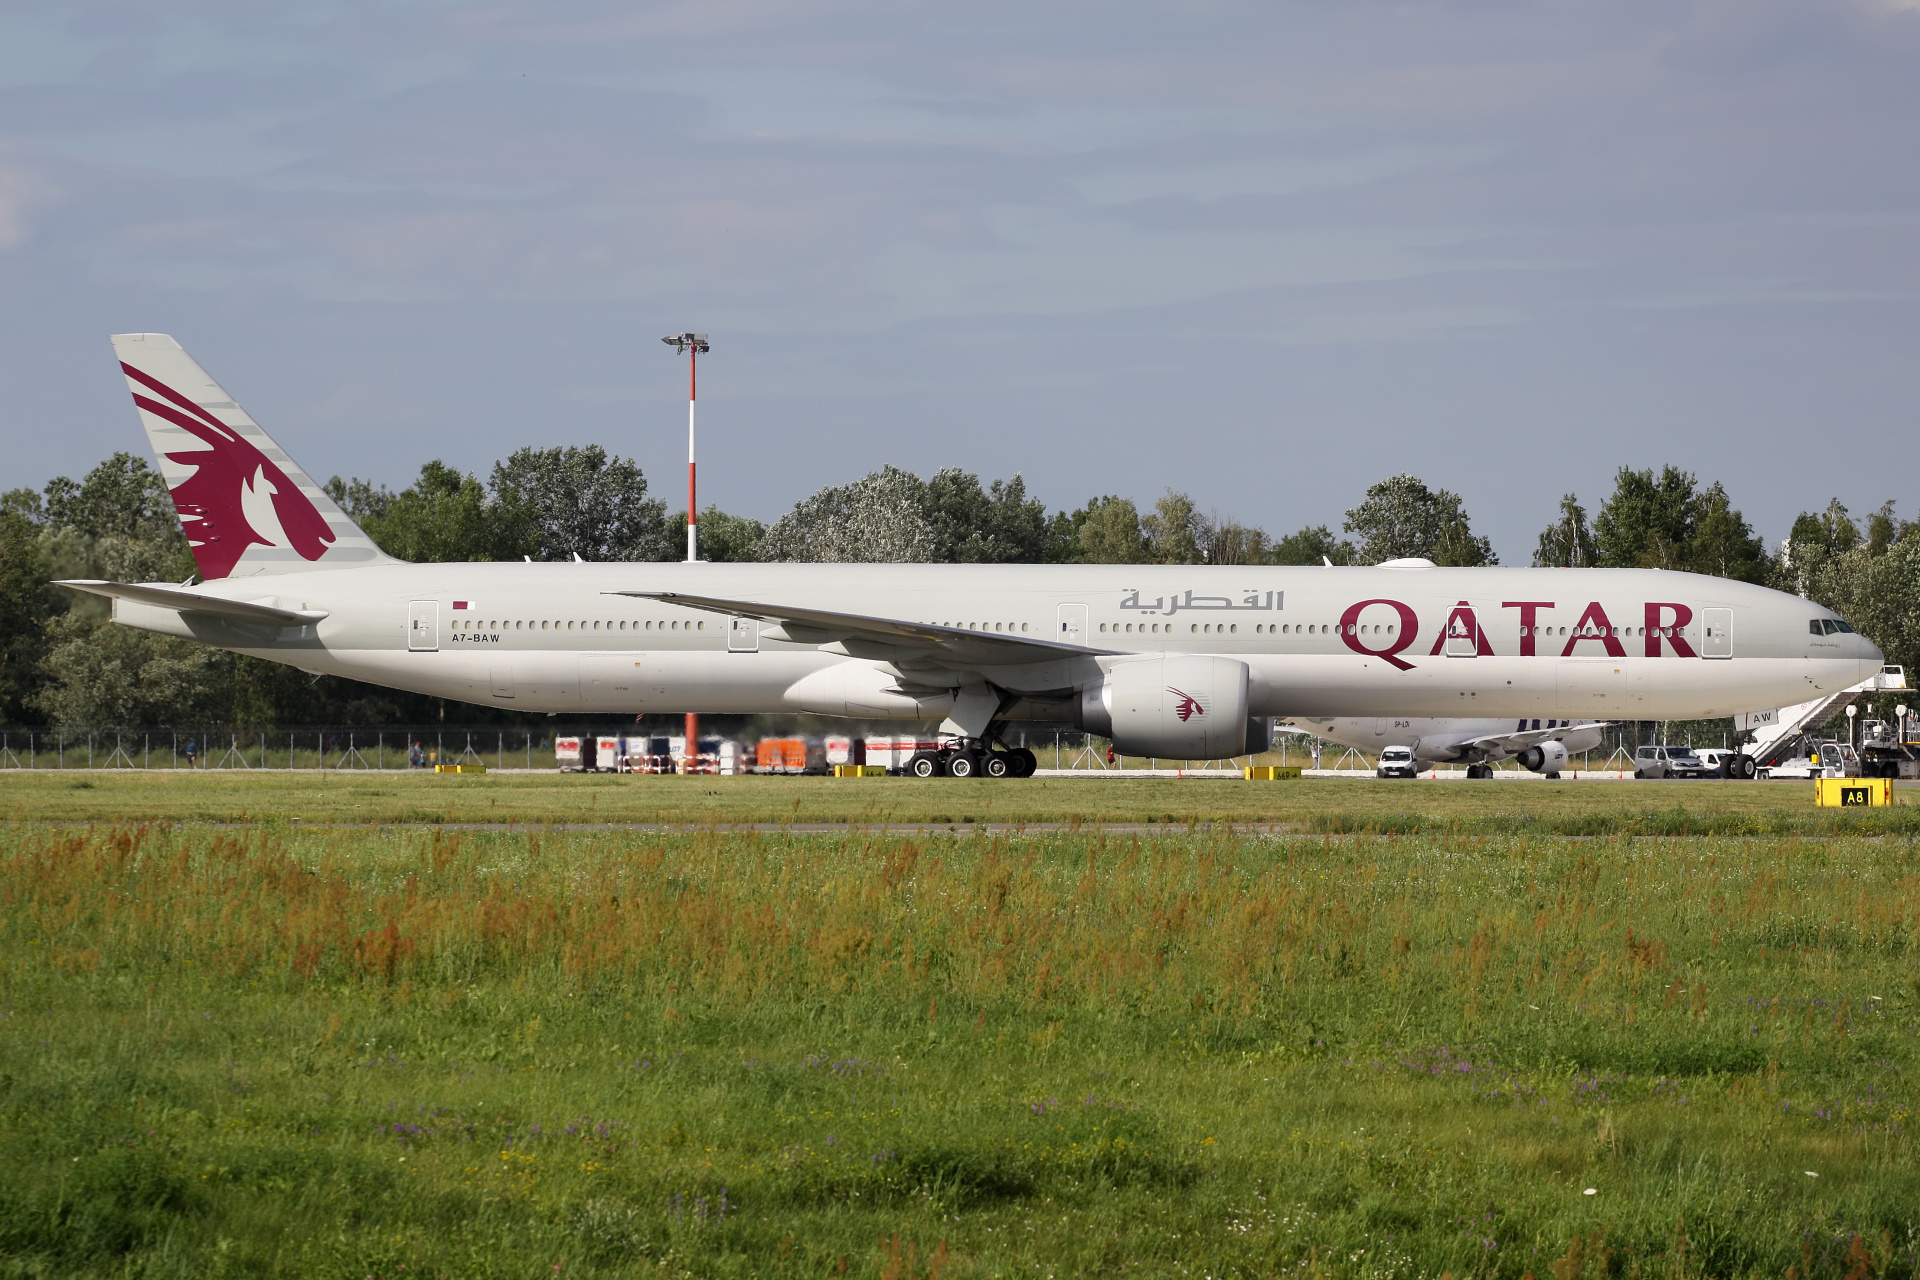 A7-BAW (Aircraft » EPWA Spotting » Boeing 777-300ER » Qatar Airways)